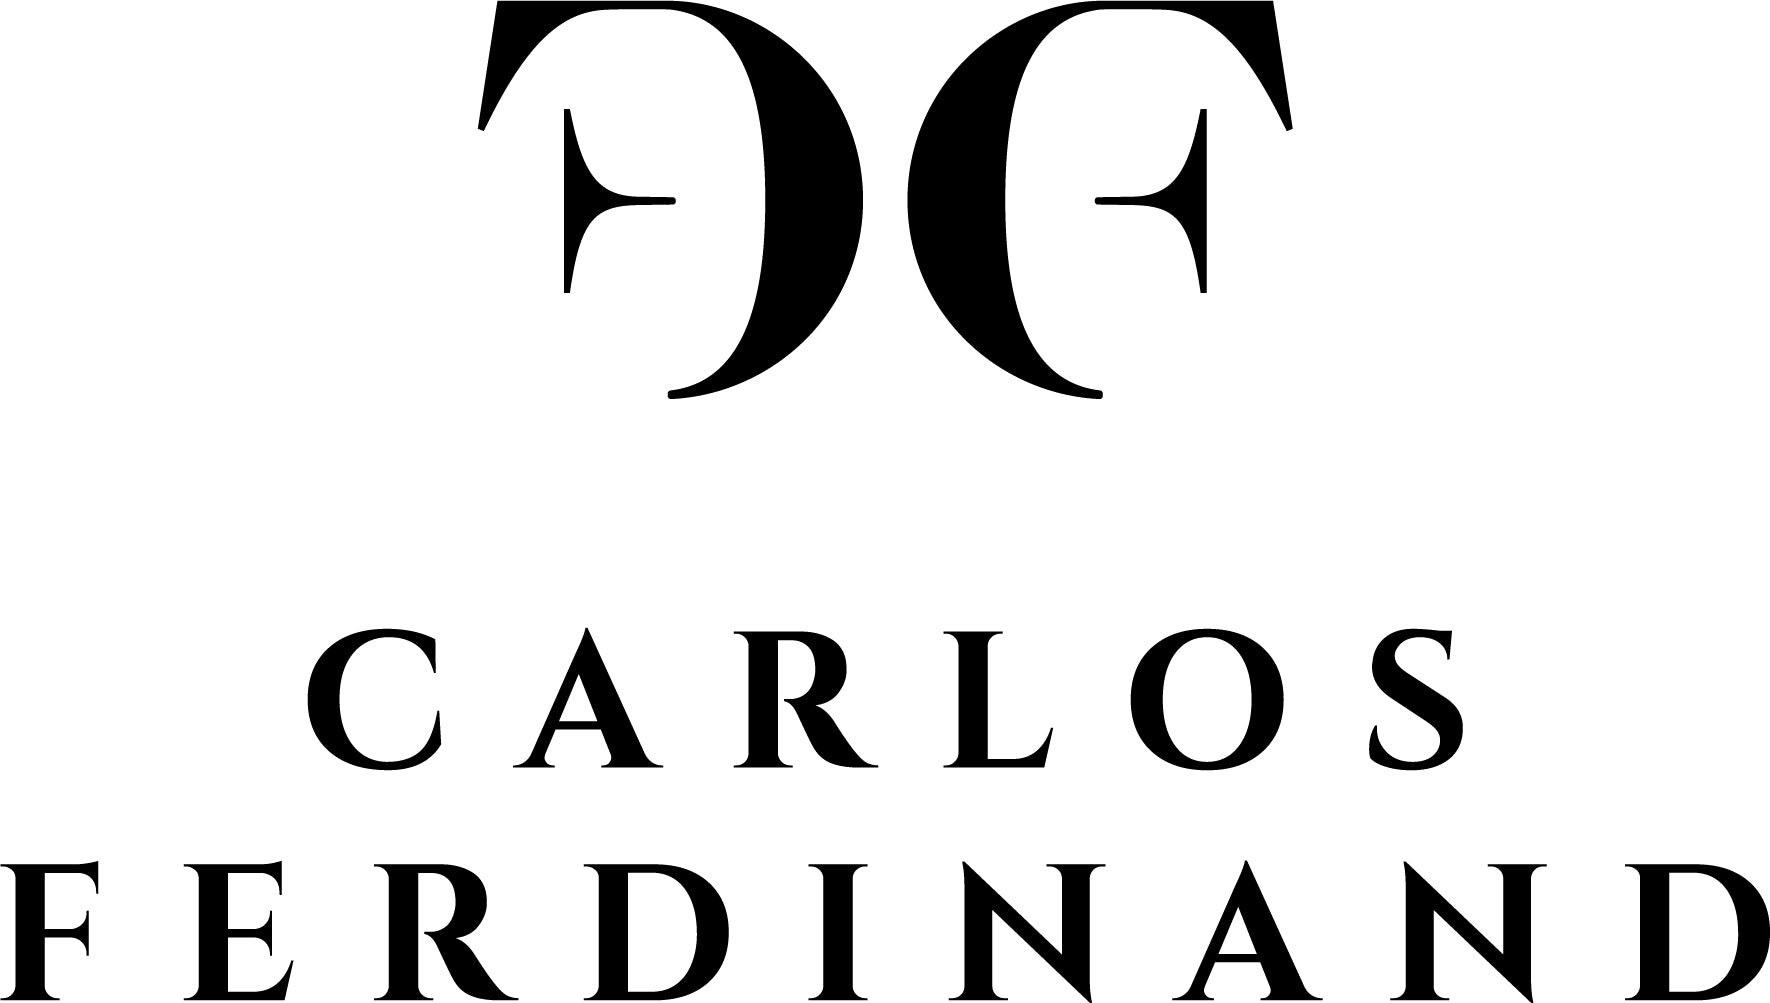 Carlos Ferdinand